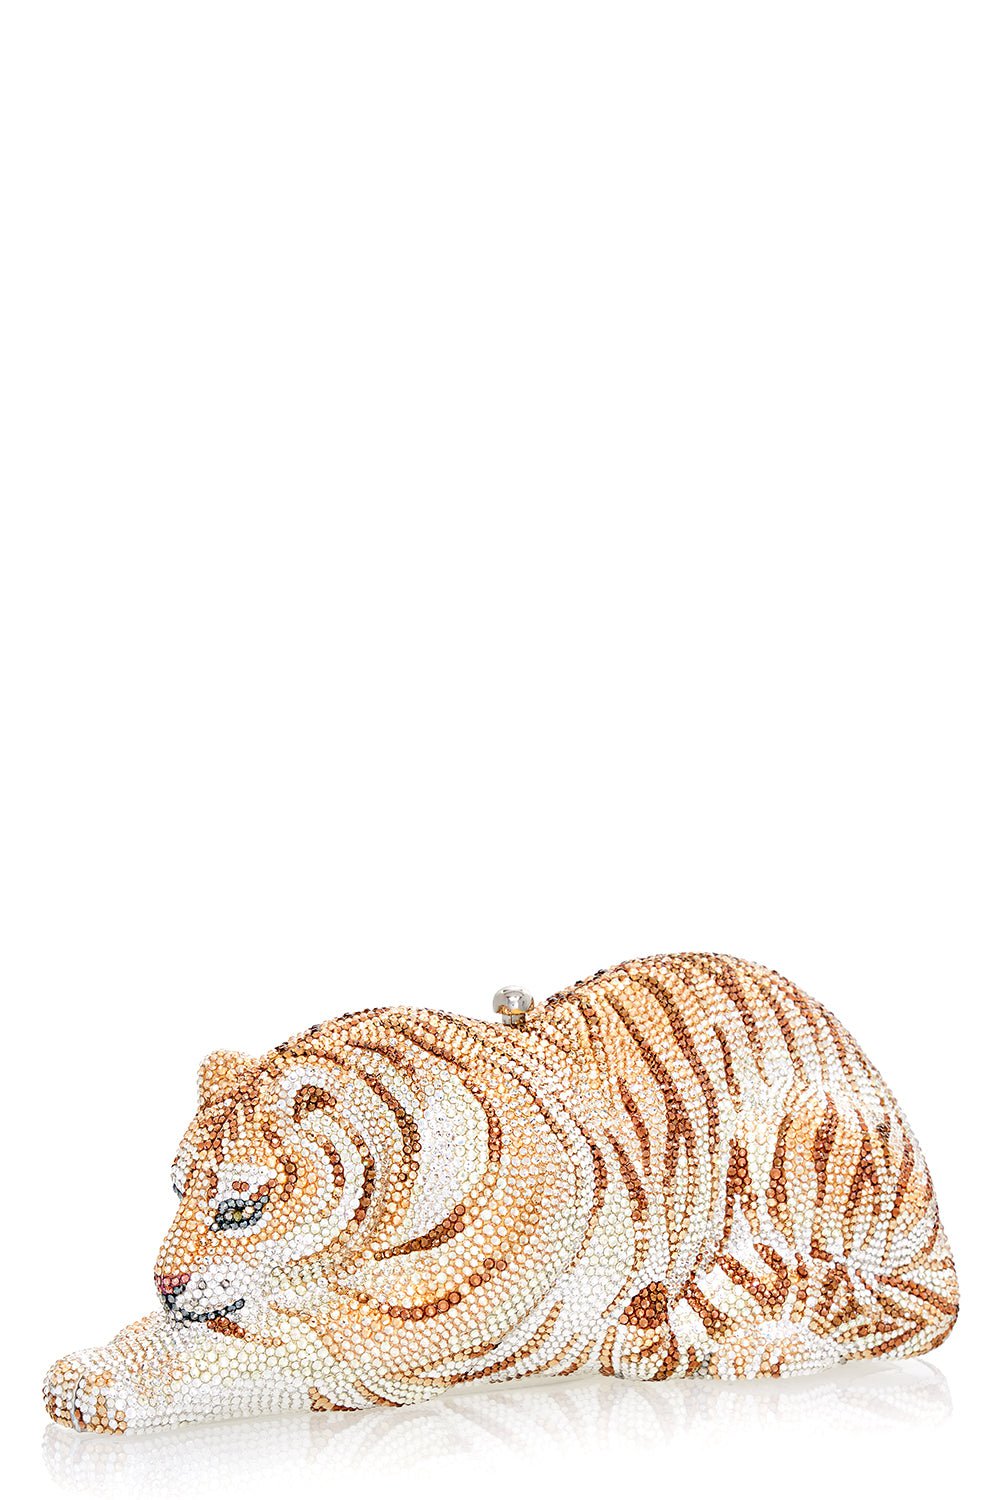 Wildcat Golden Cub Bag